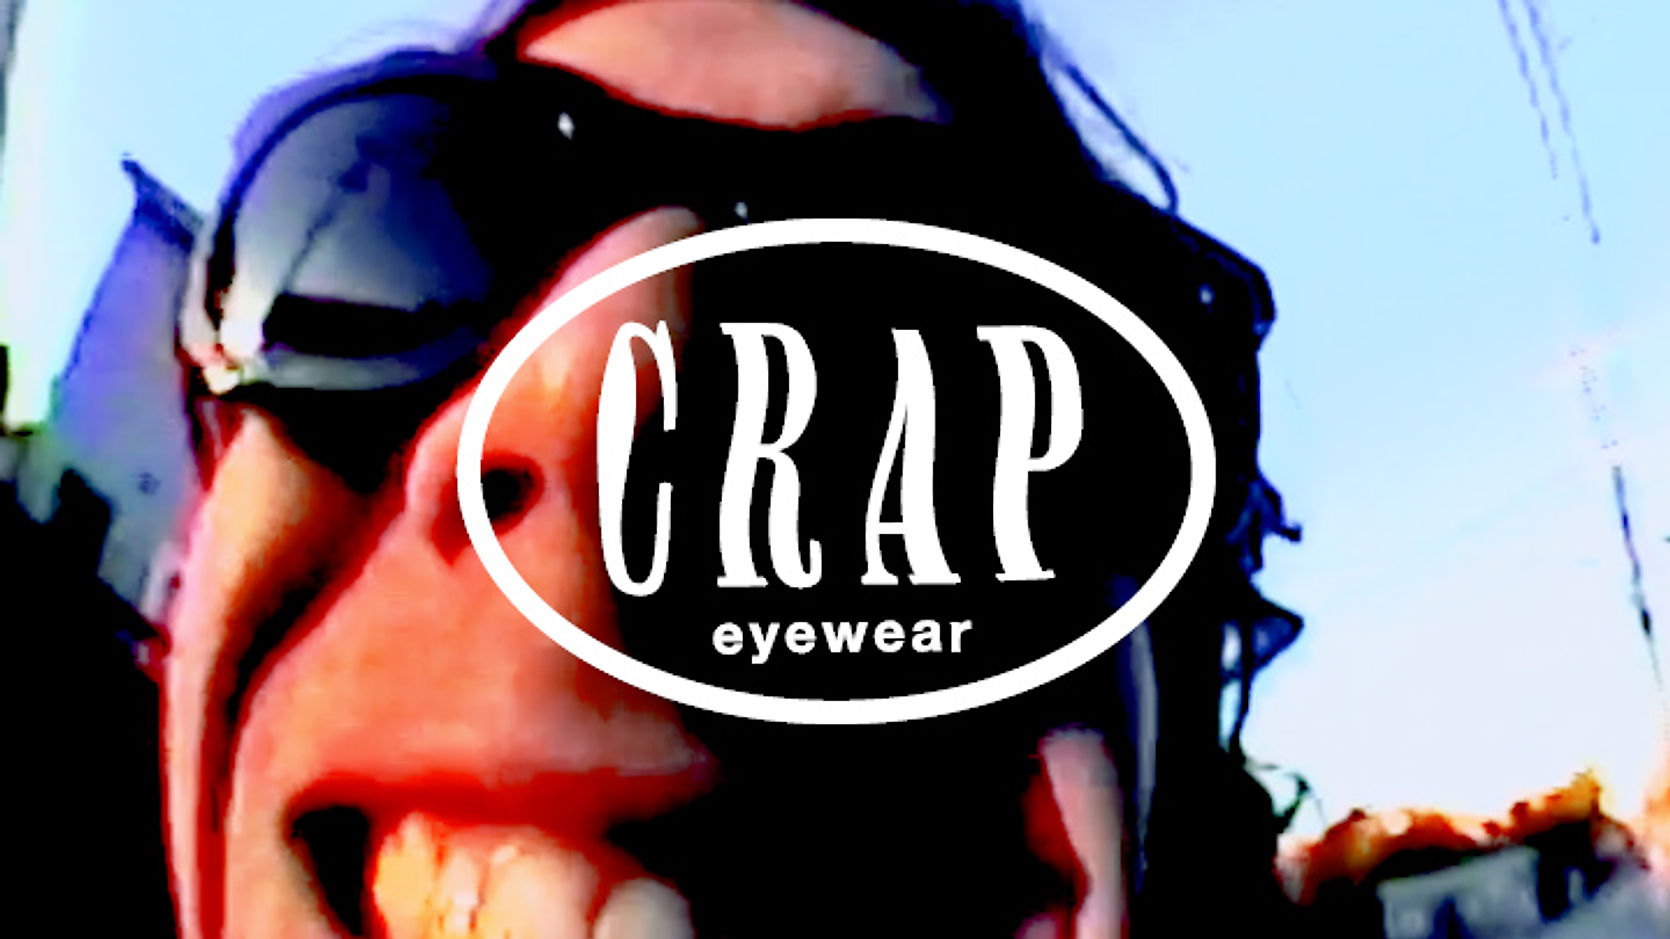 crap eyewear: winter22/23